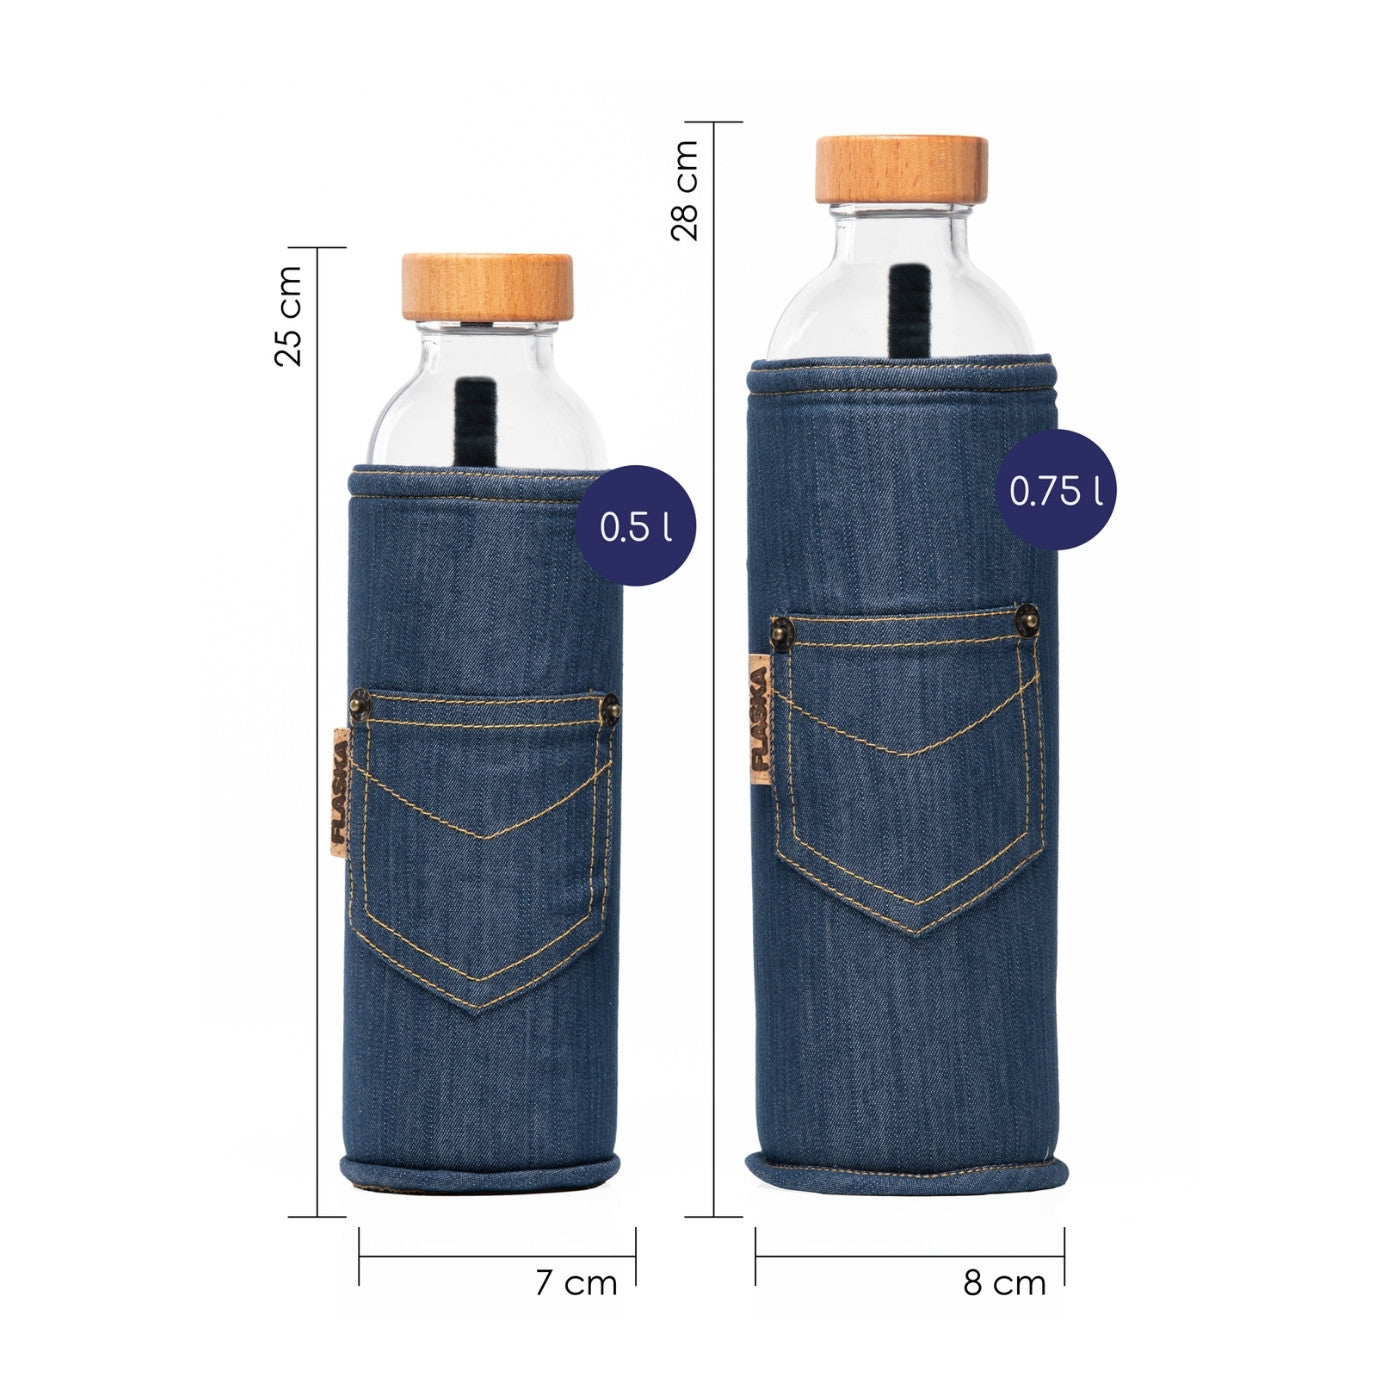 dimensionen der wiederverwendbaren flaska glasflasche mit jeans schutzhülle im jeans design